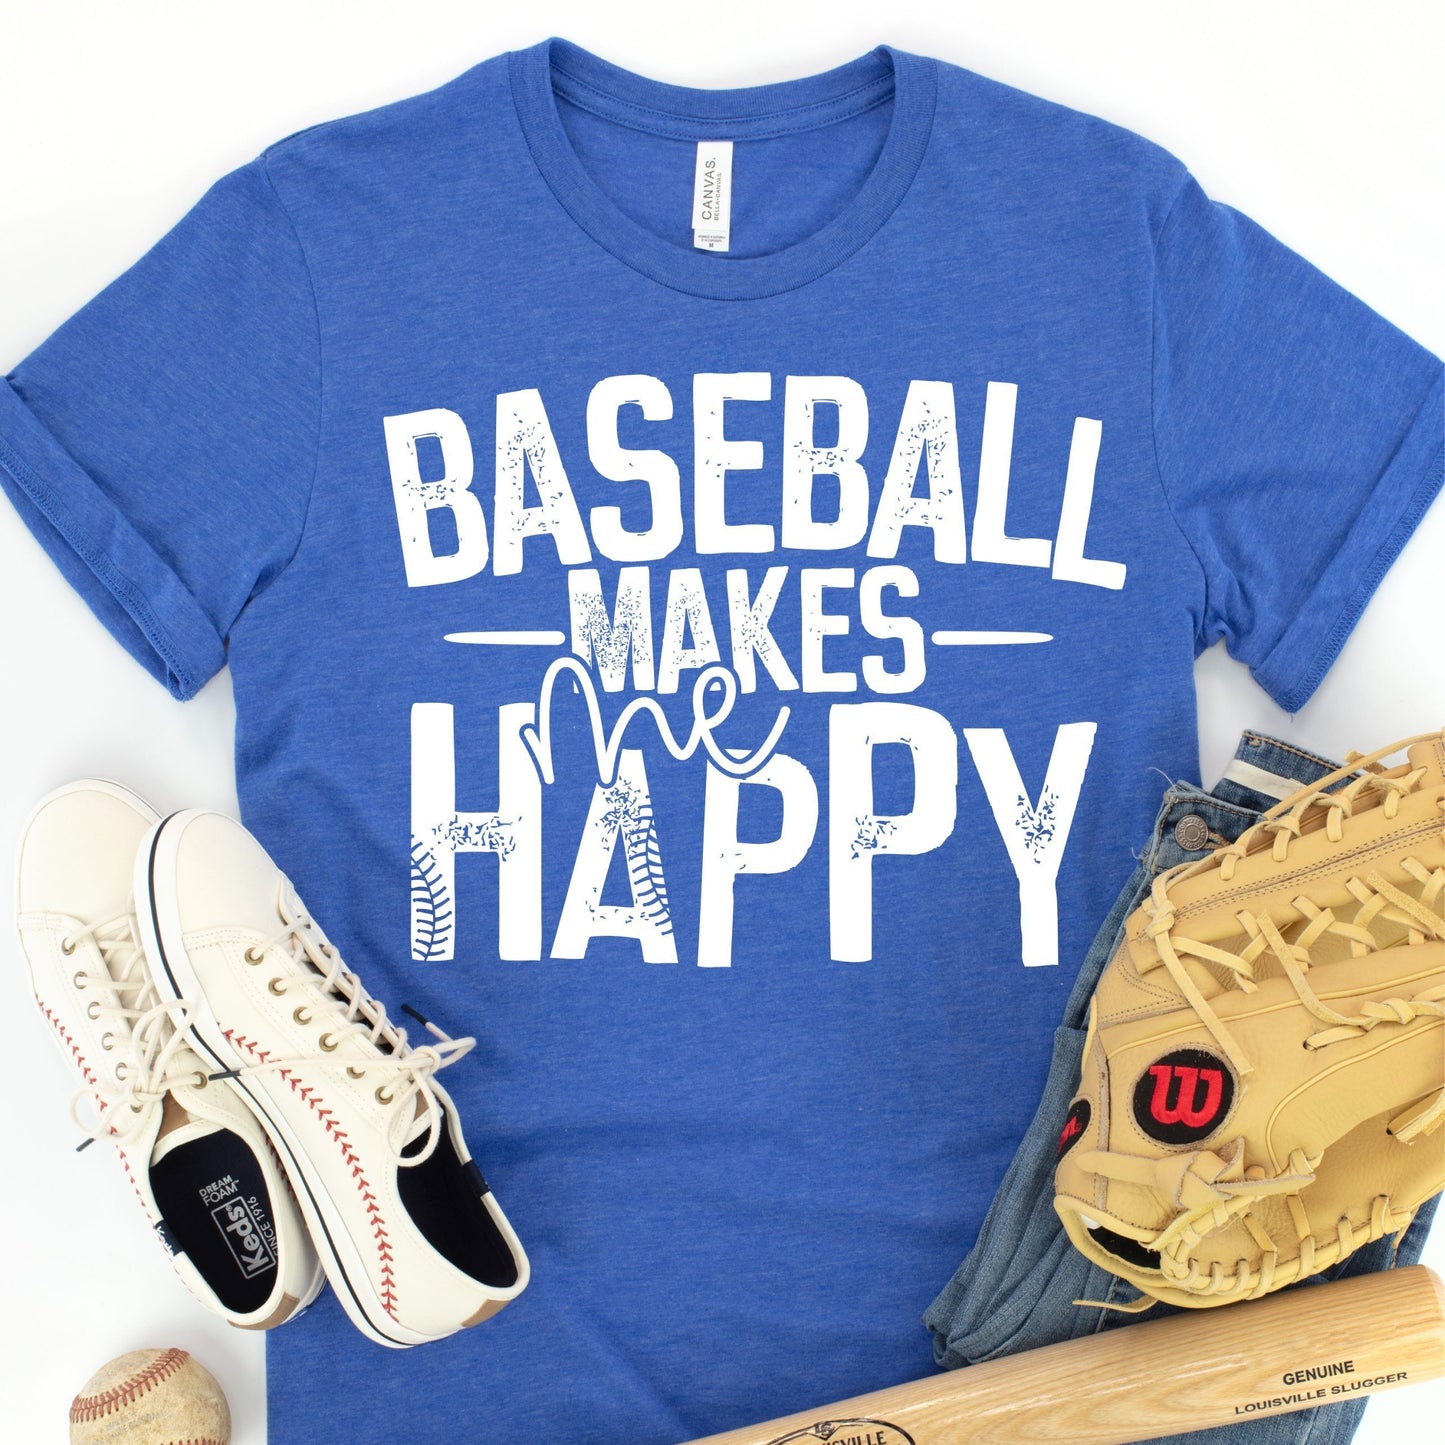 Baseball makes me happy